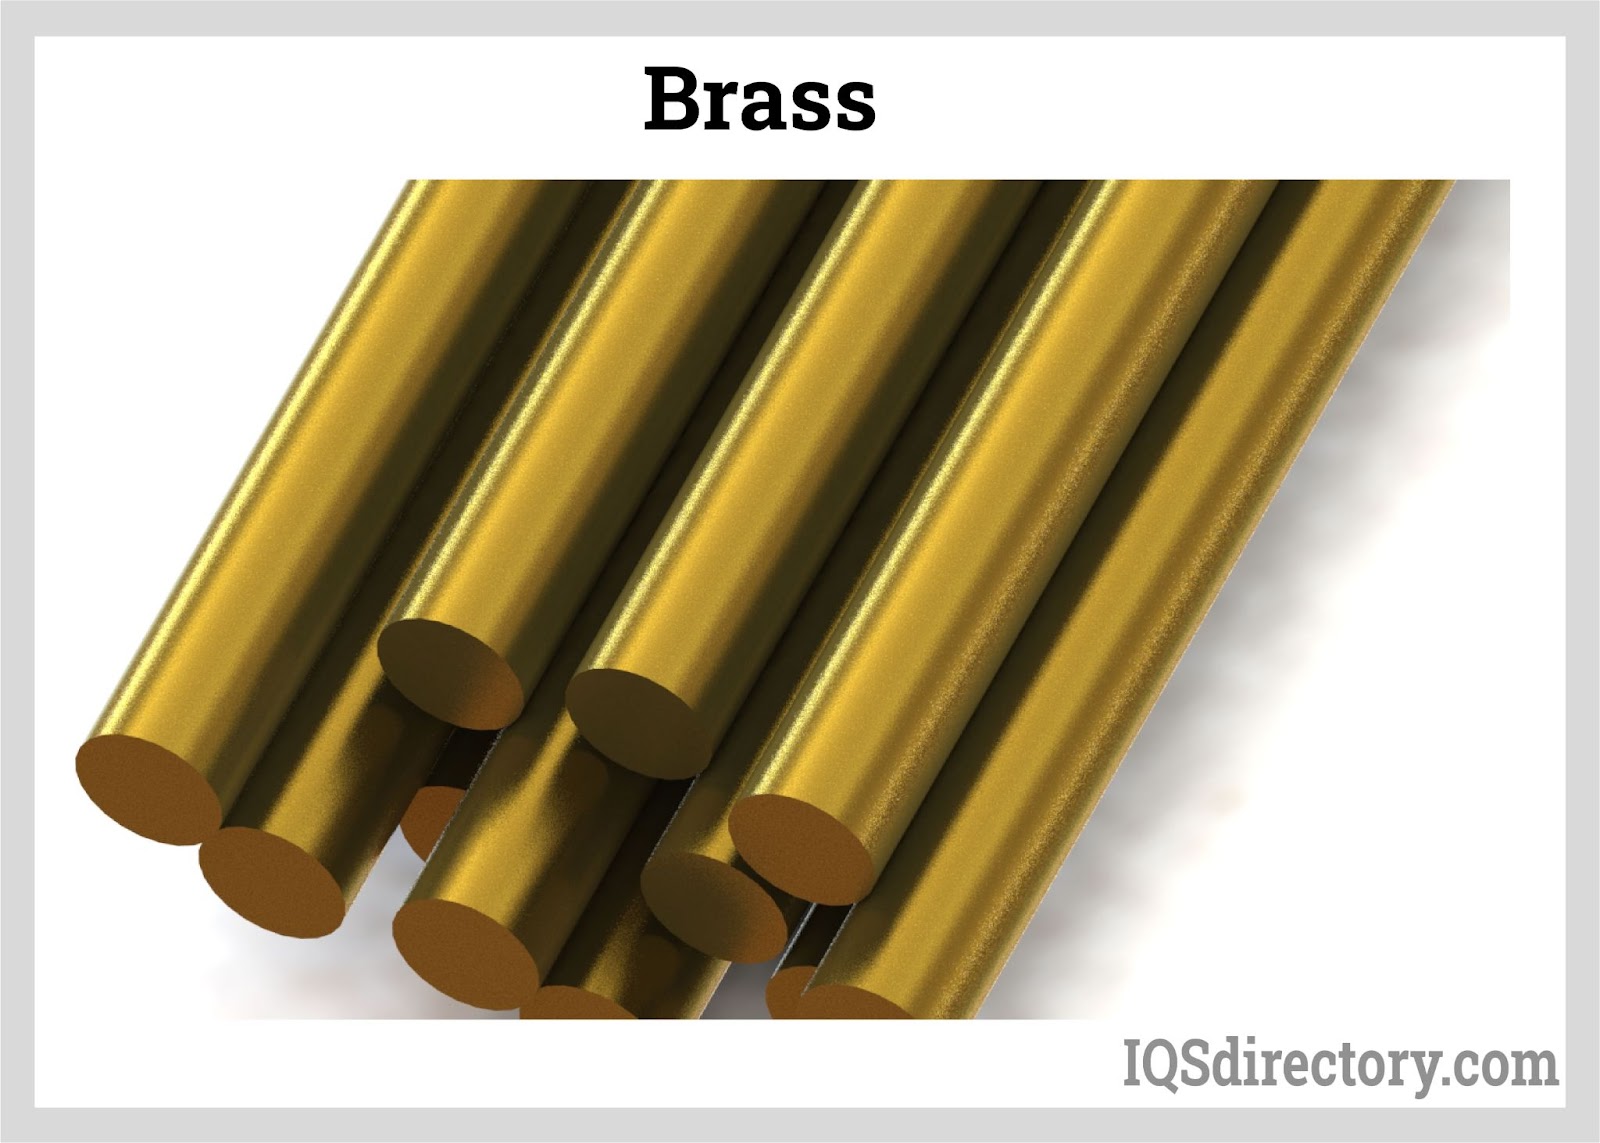 Brass, Definition, Properties, & Facts, Brass 